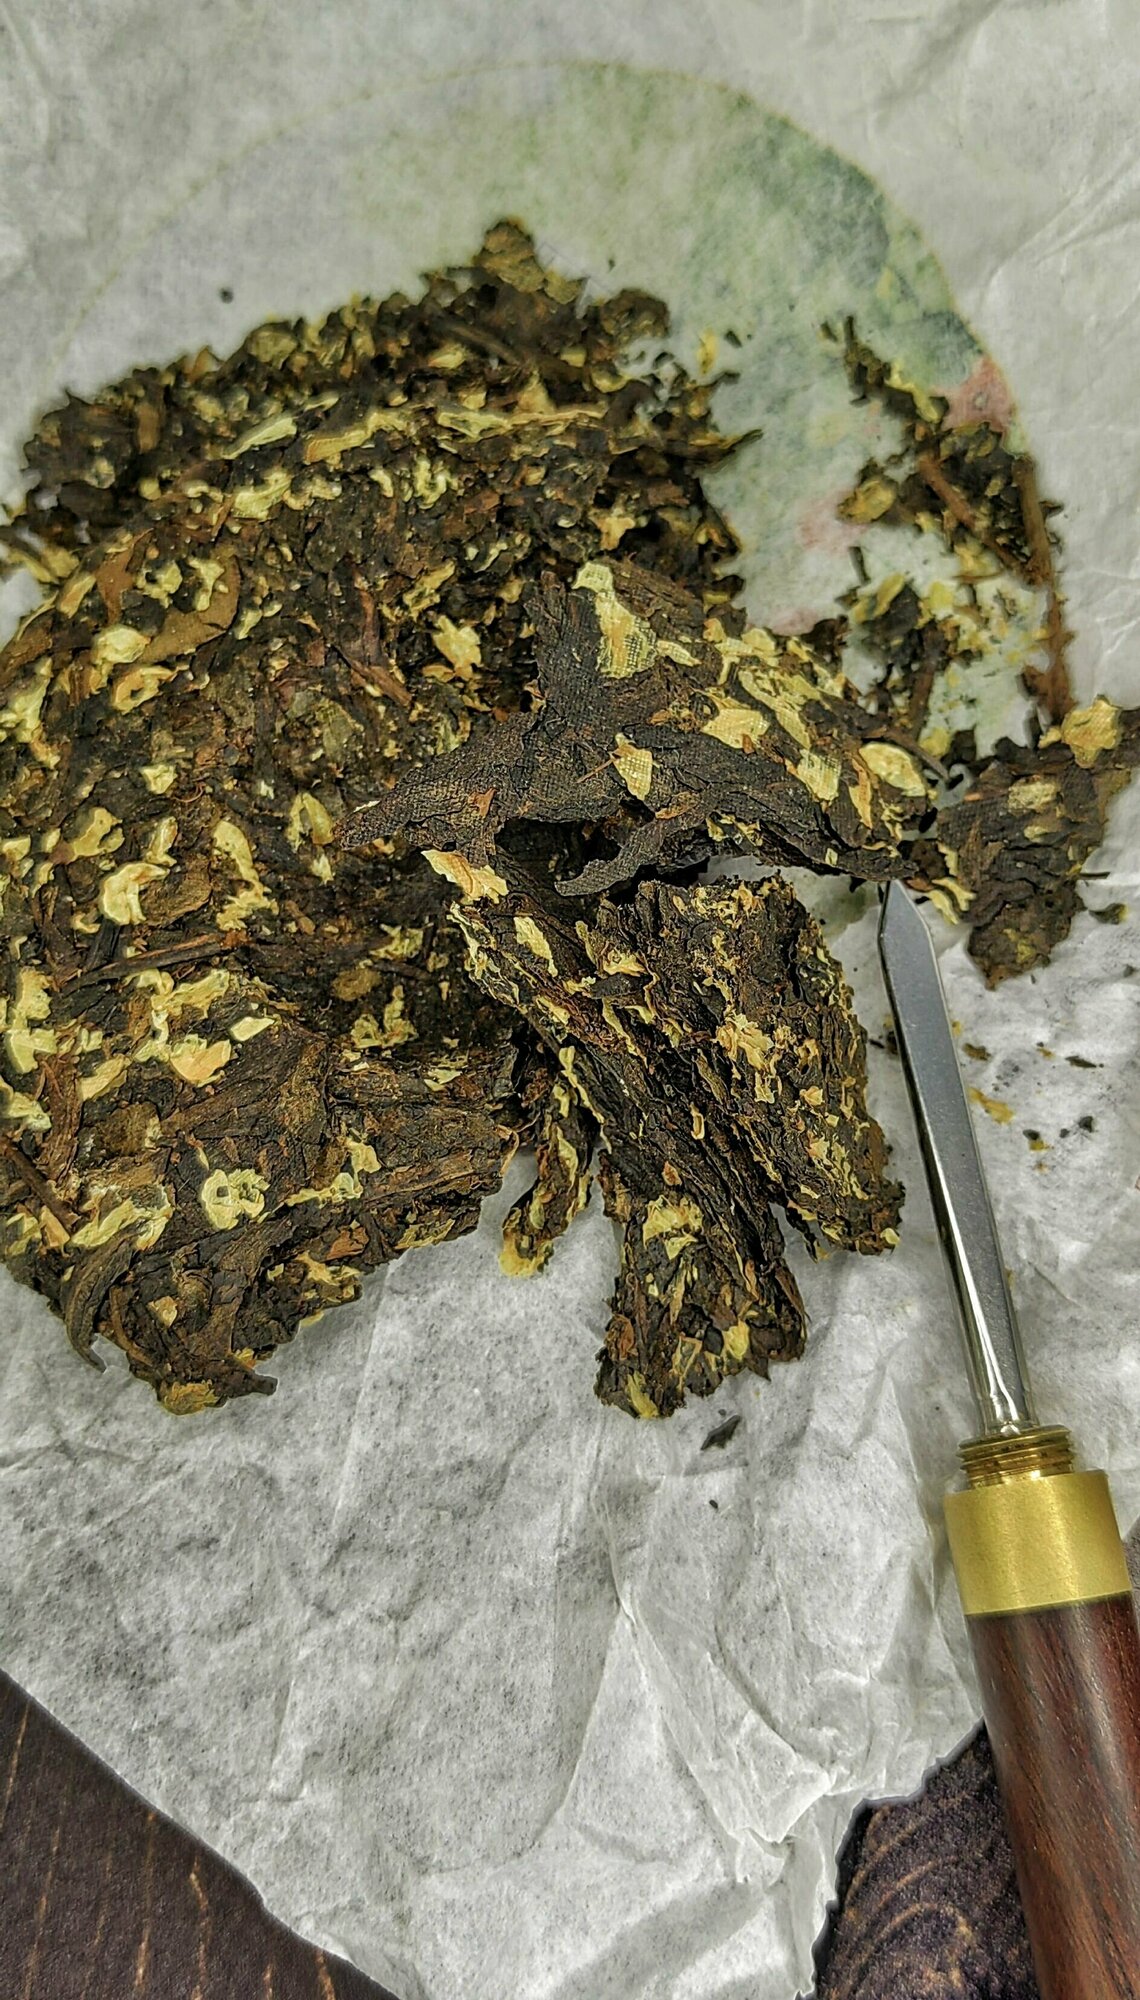 Шу Пуэр с жасмином "Моли Хуа" / Листовой чай, черный чай, блин 100 гр.